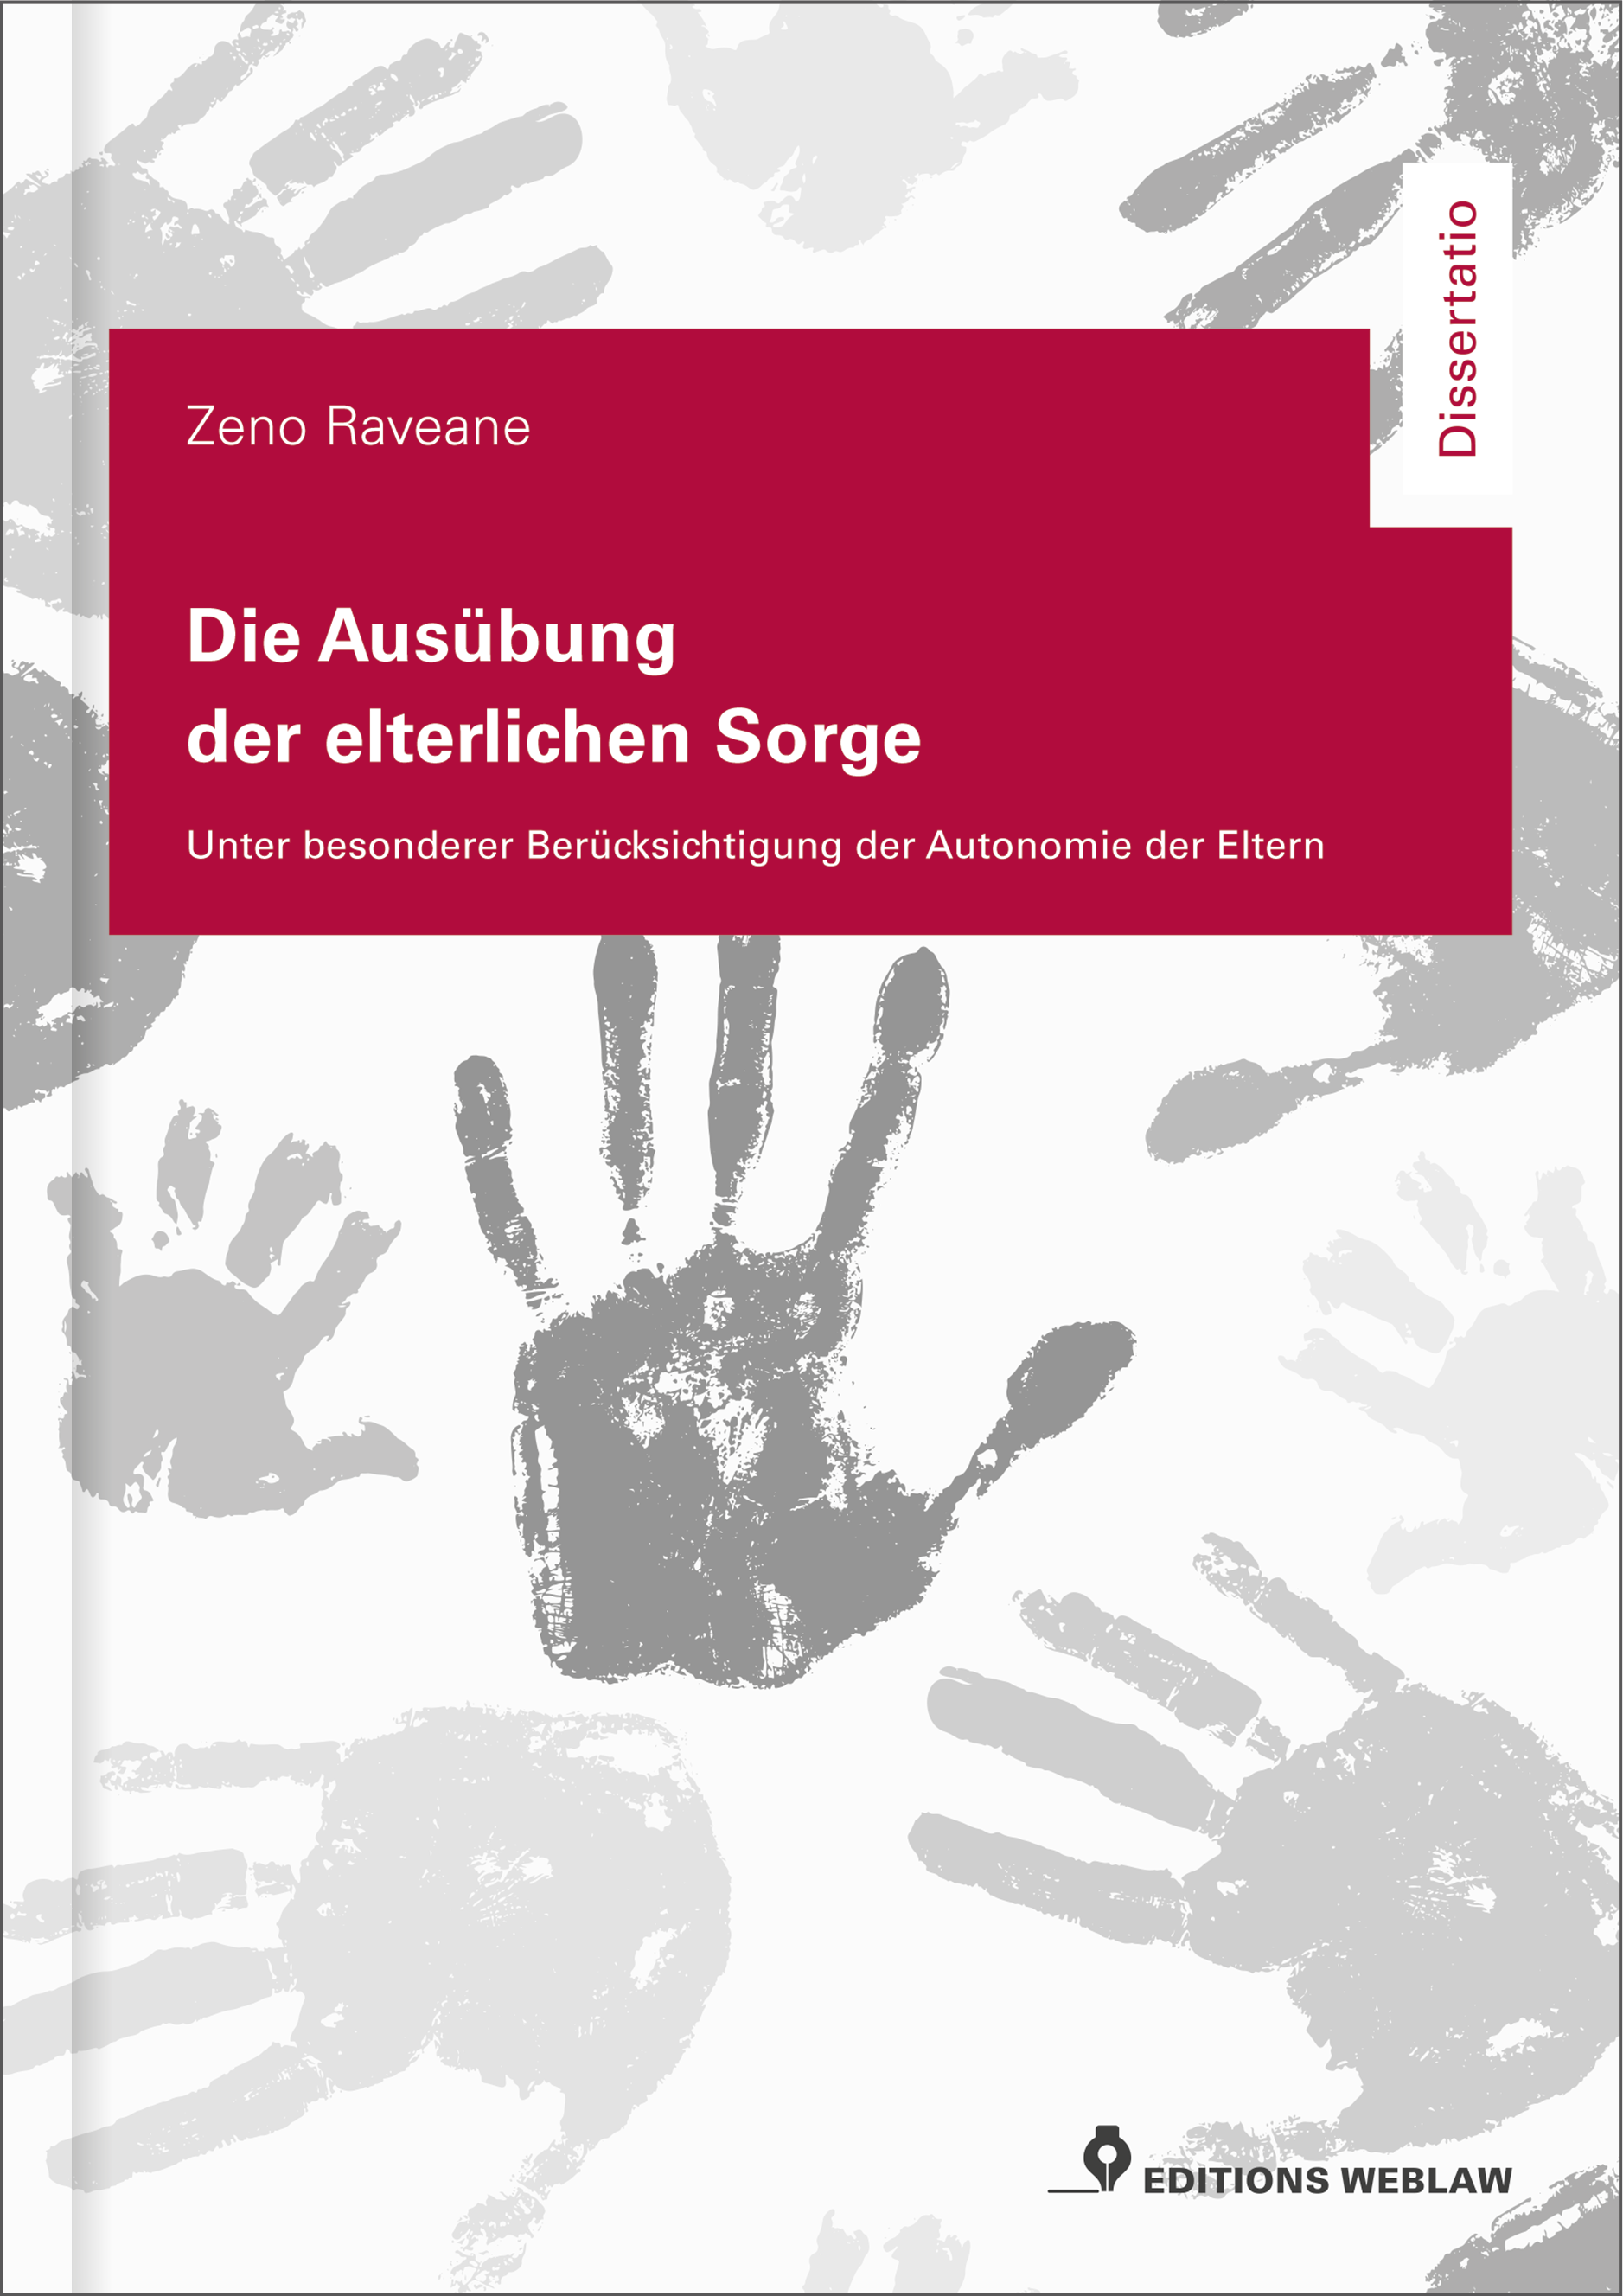 Zeno Raveane, Die Ausübung der elterlichen Sorge: neu bei Editions Weblaw.